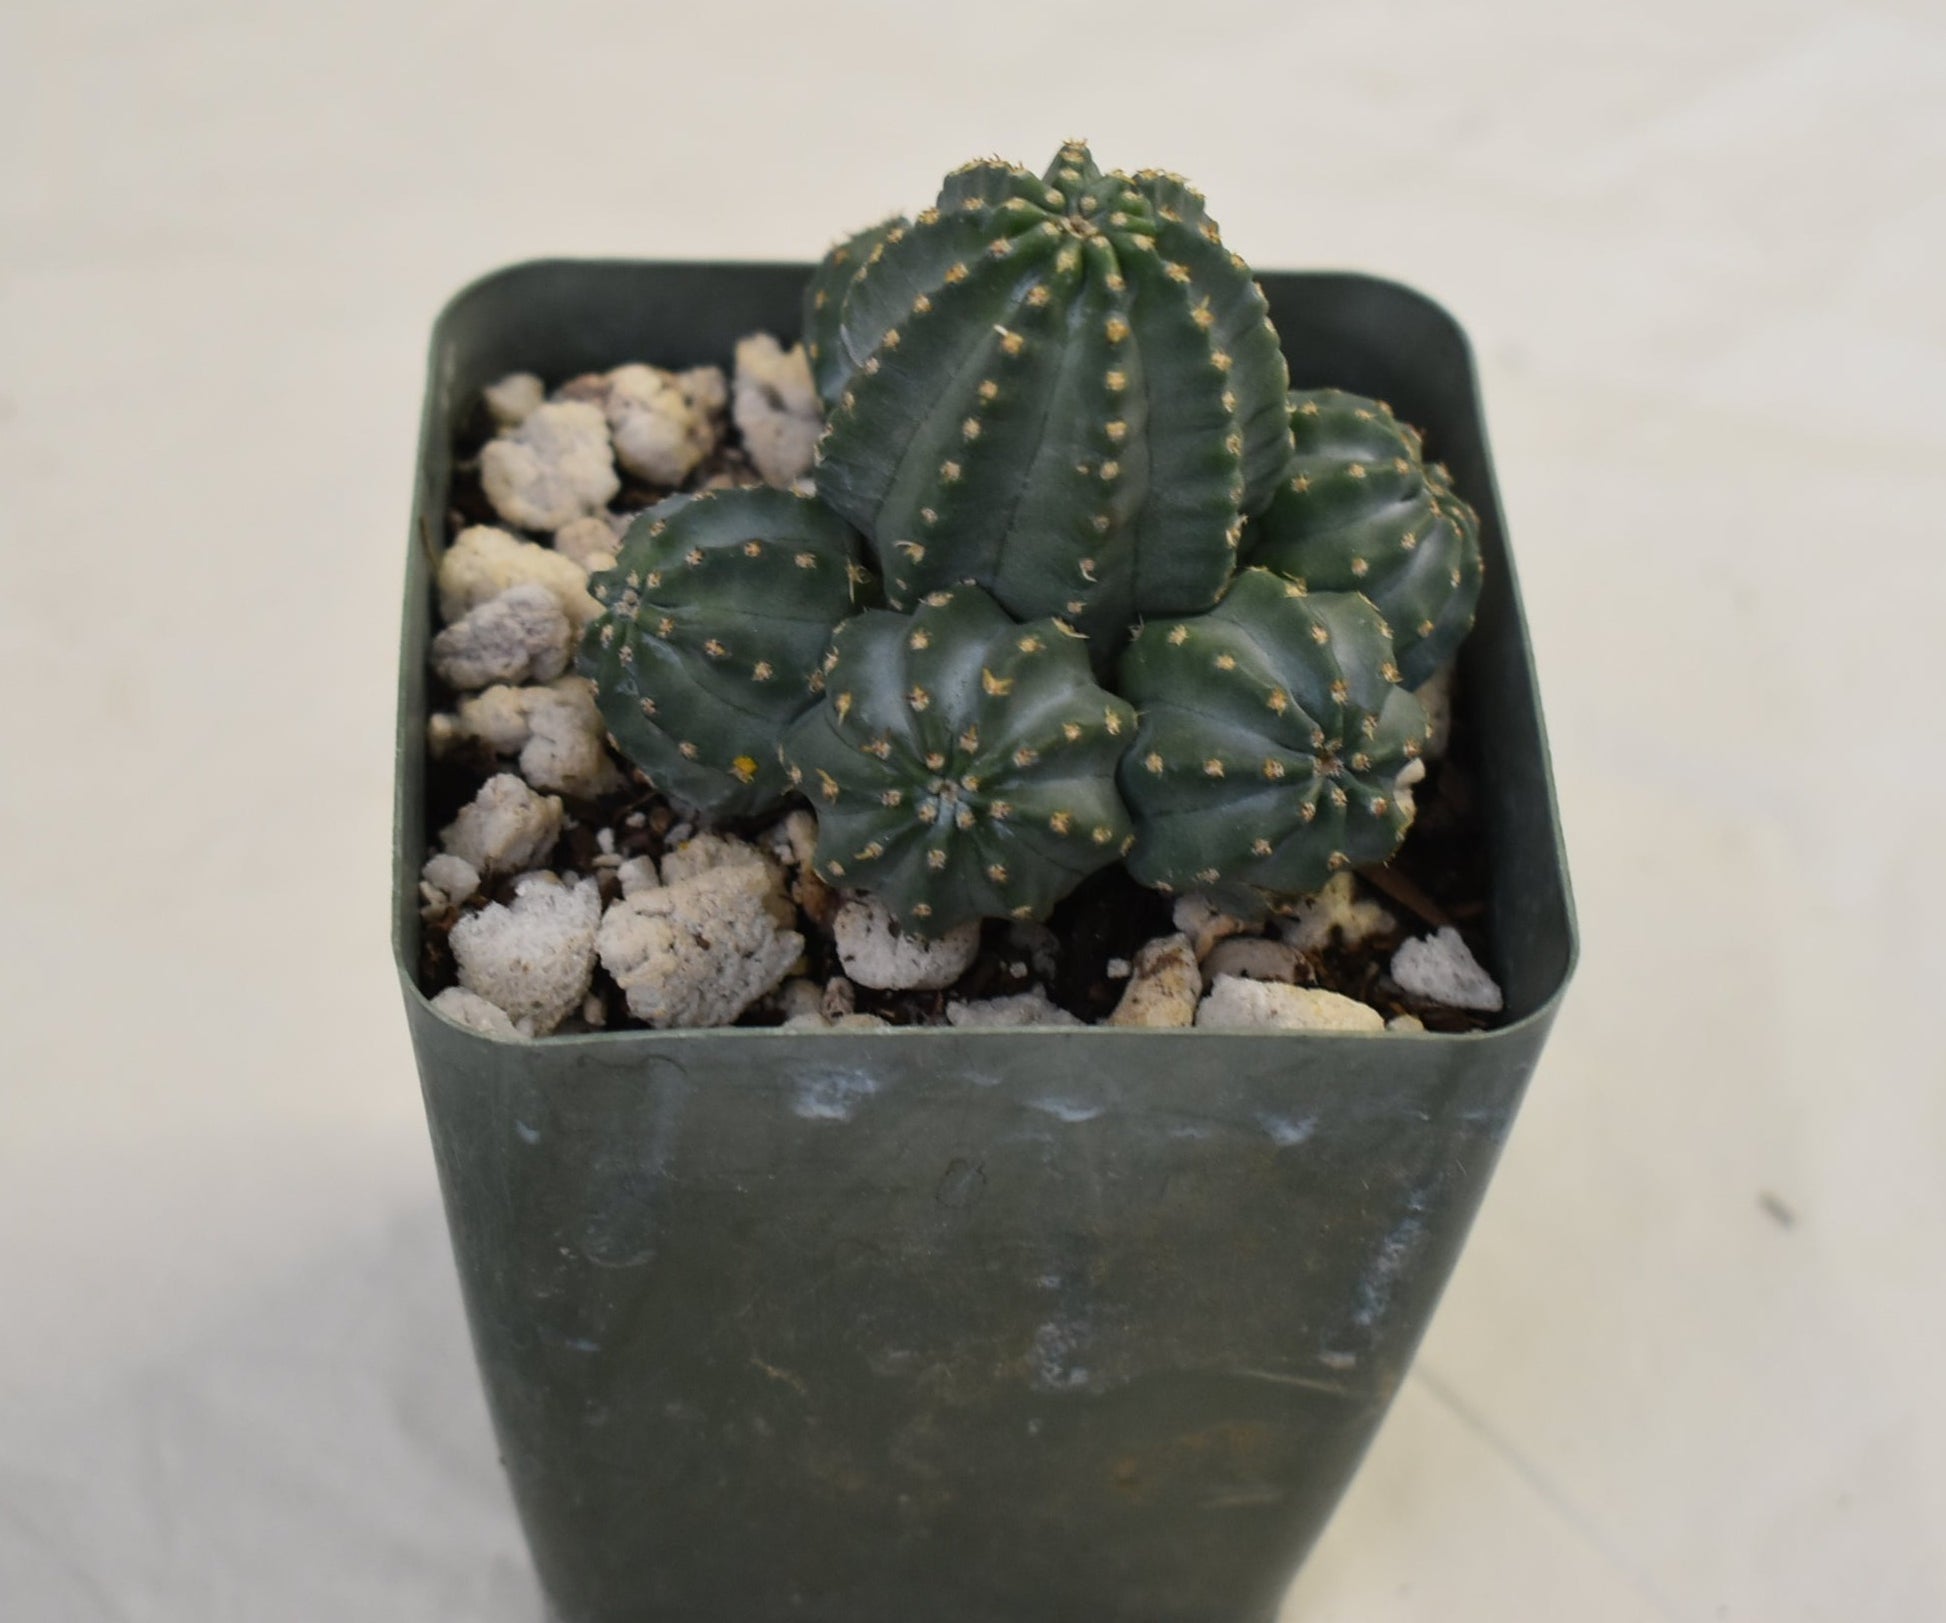 Echinocereus pulchellus Live Cactus In 2 Inch